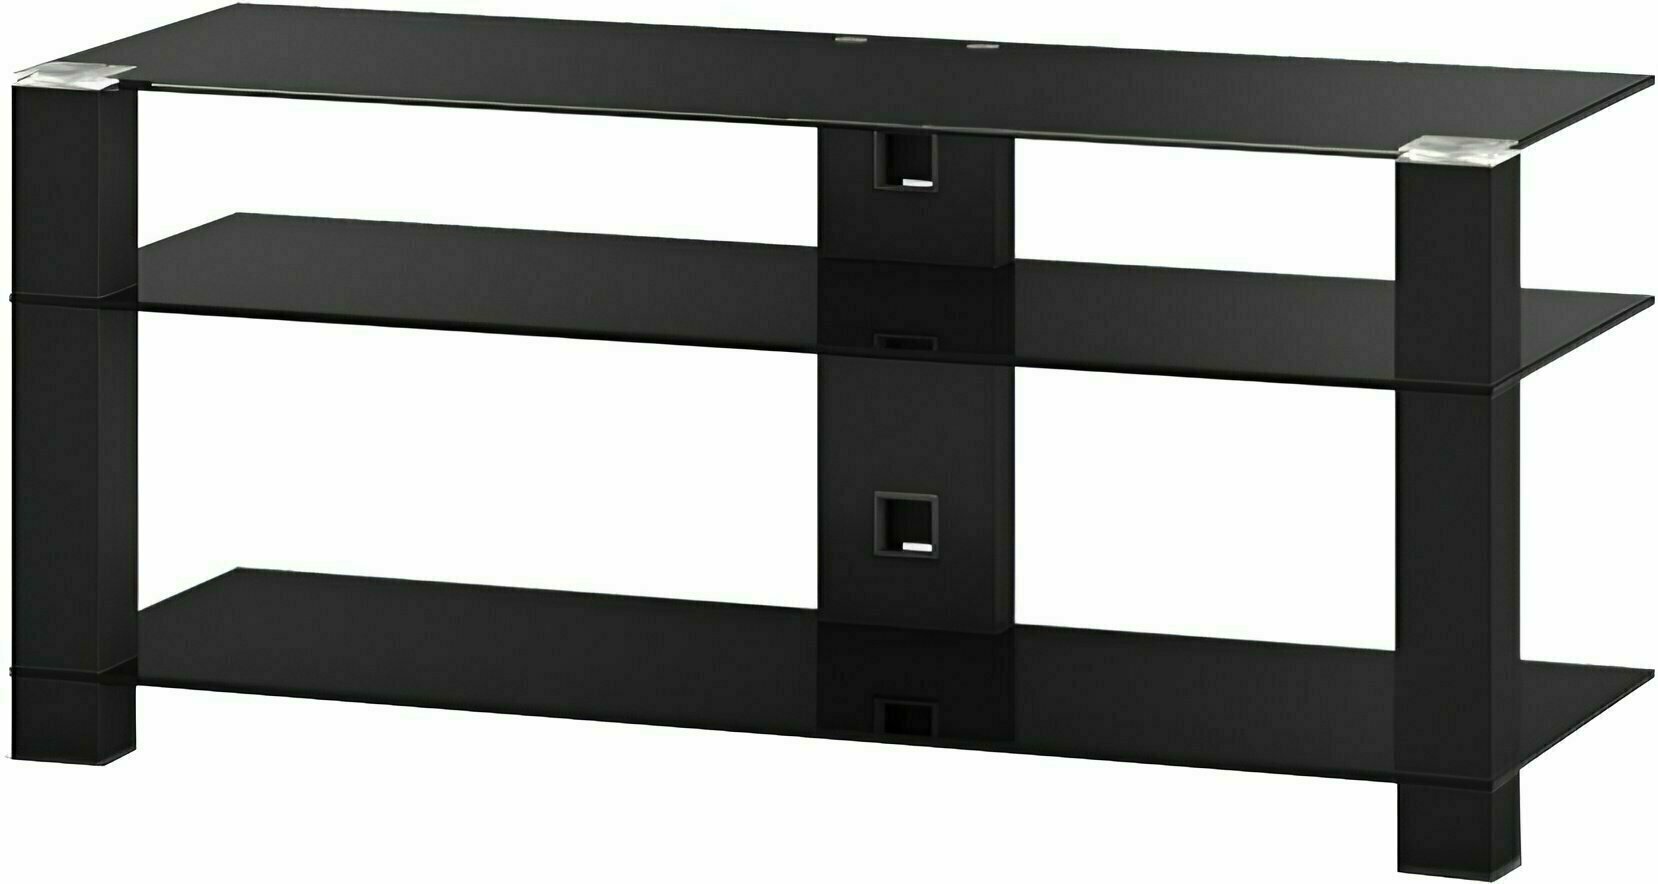 Table Hi-Fi / TV Sonorous PL 3400 B Black/Black